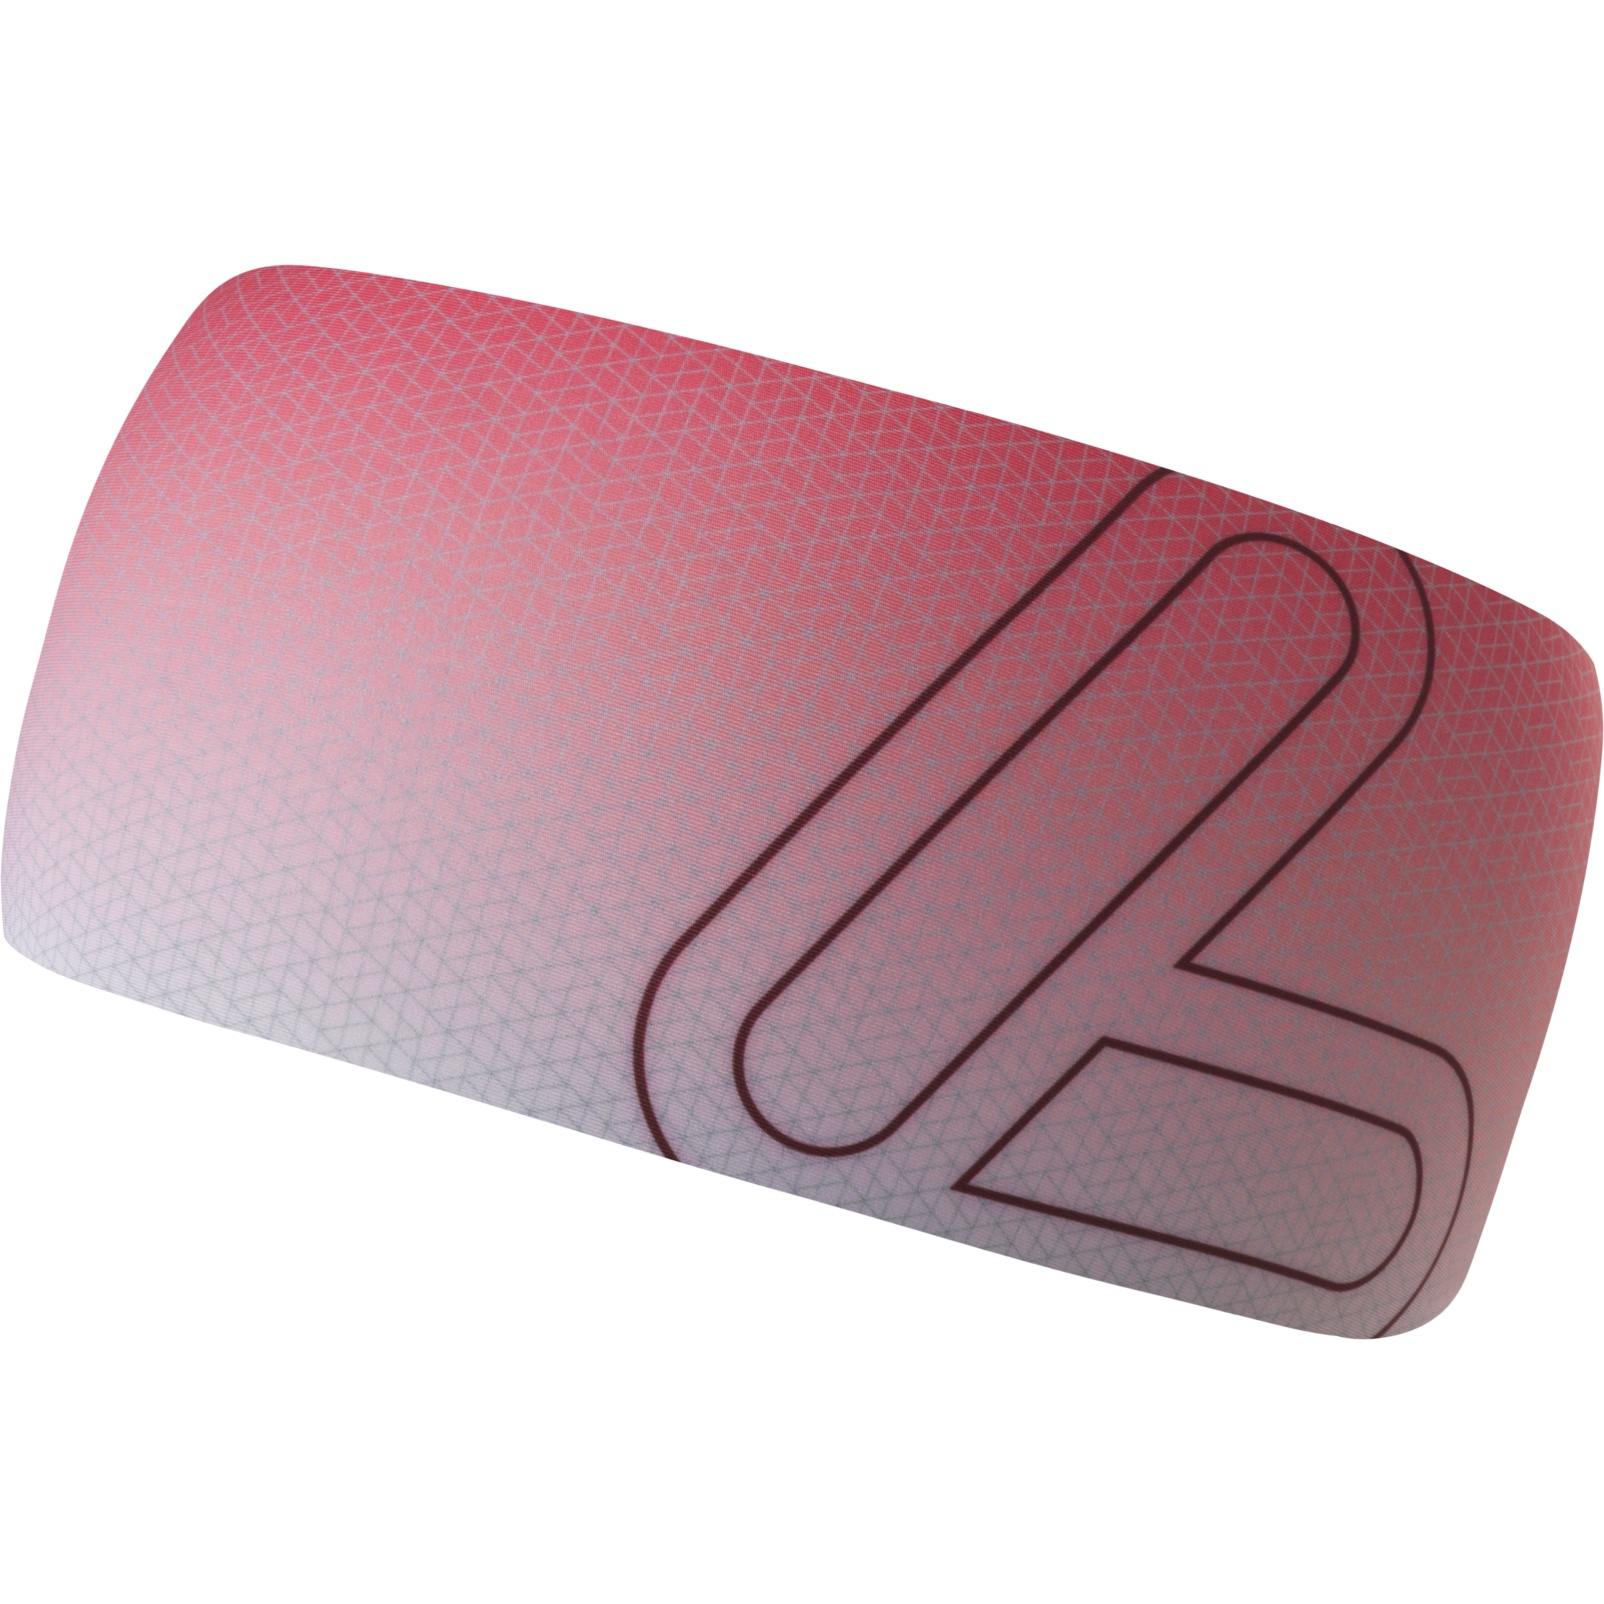 Produktbild von Löffler Elastic Stirnband Open Cut - rouge red/burgund 565